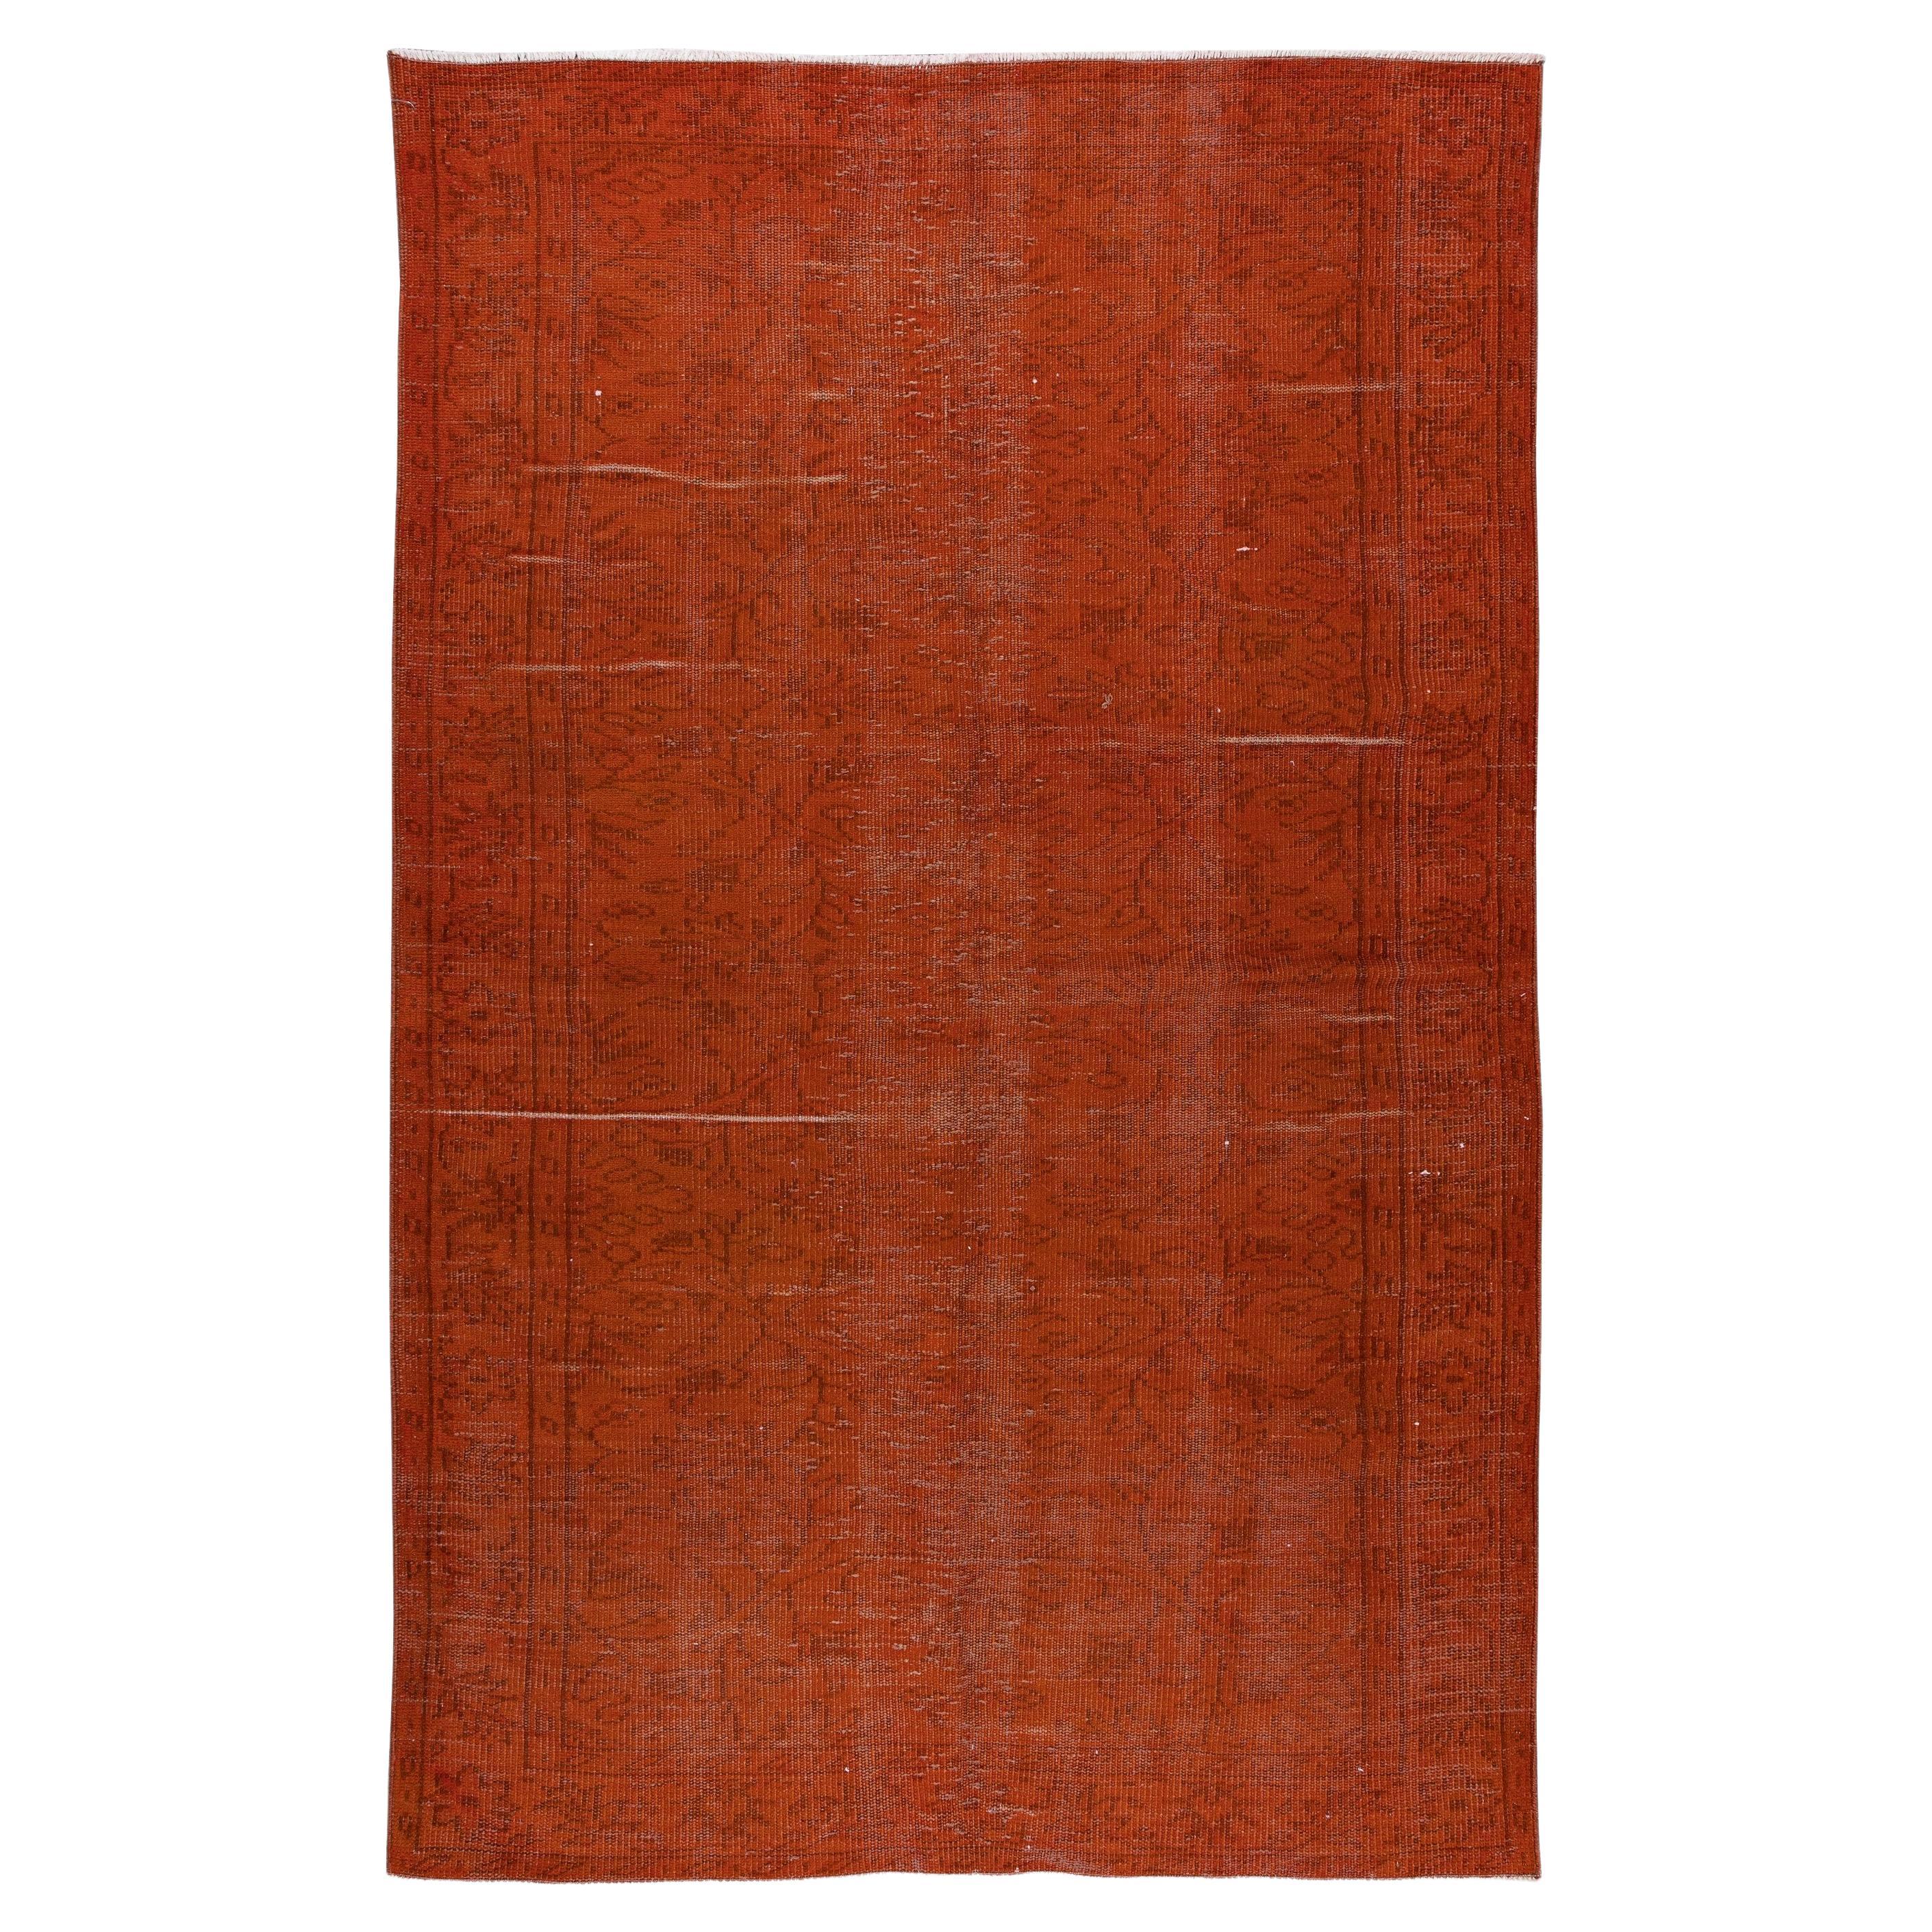 5.2x8.2 Ft Tapis turc noué à la main sur-teint en orange Intérieurs contemporains